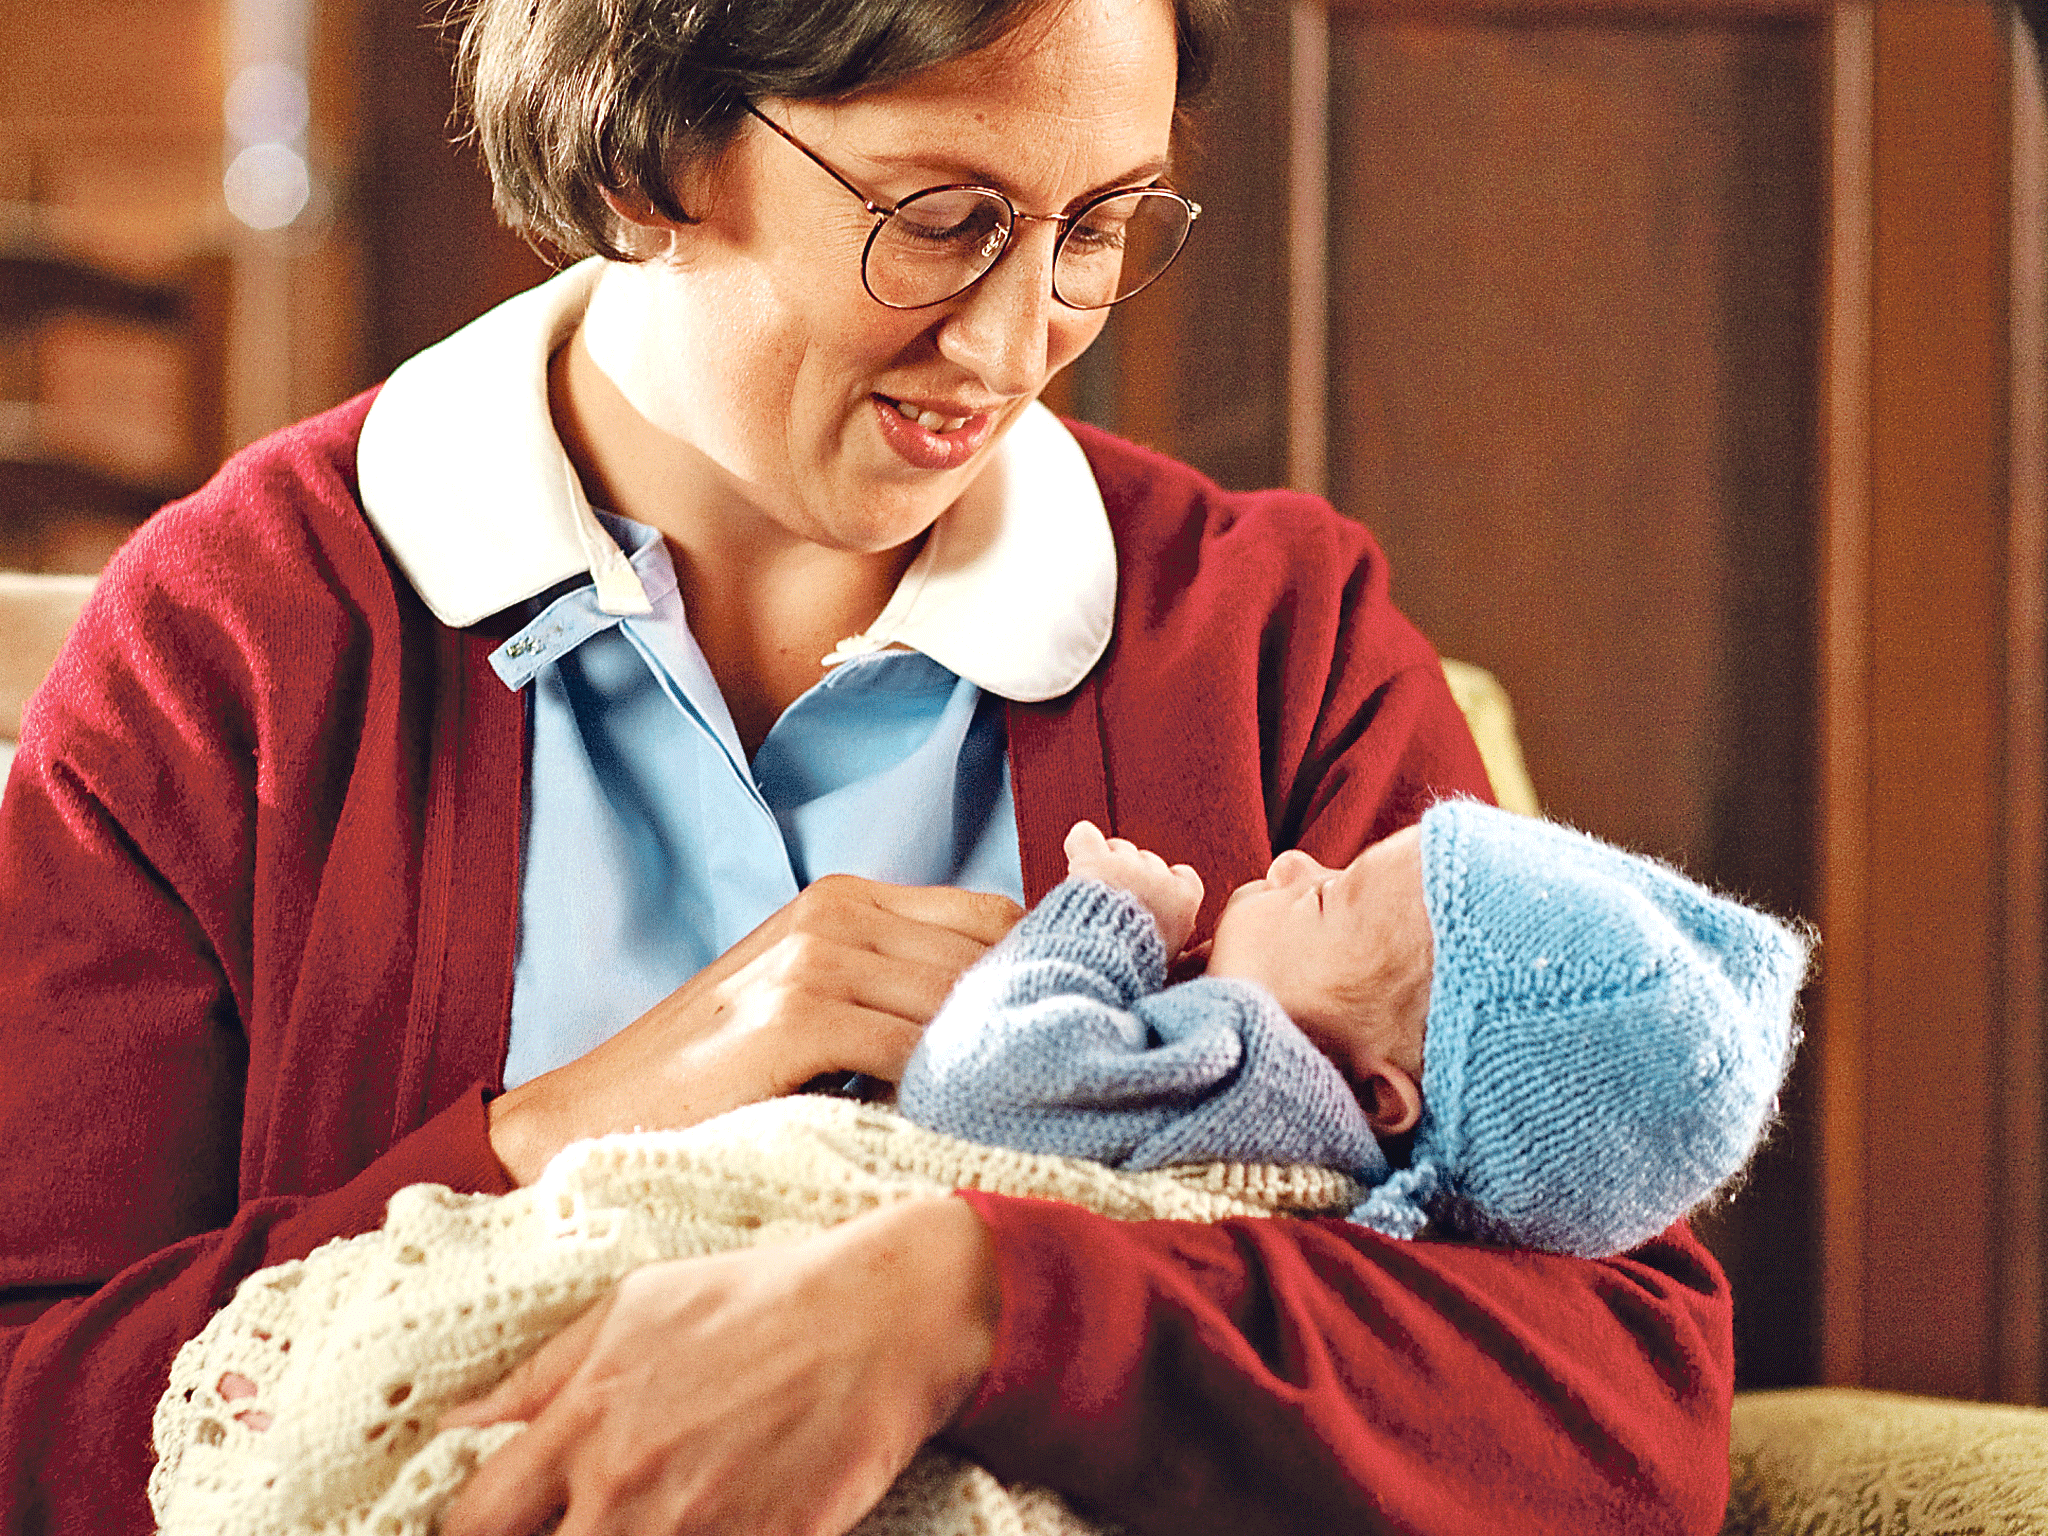 Holding the baby: Miranda Hart